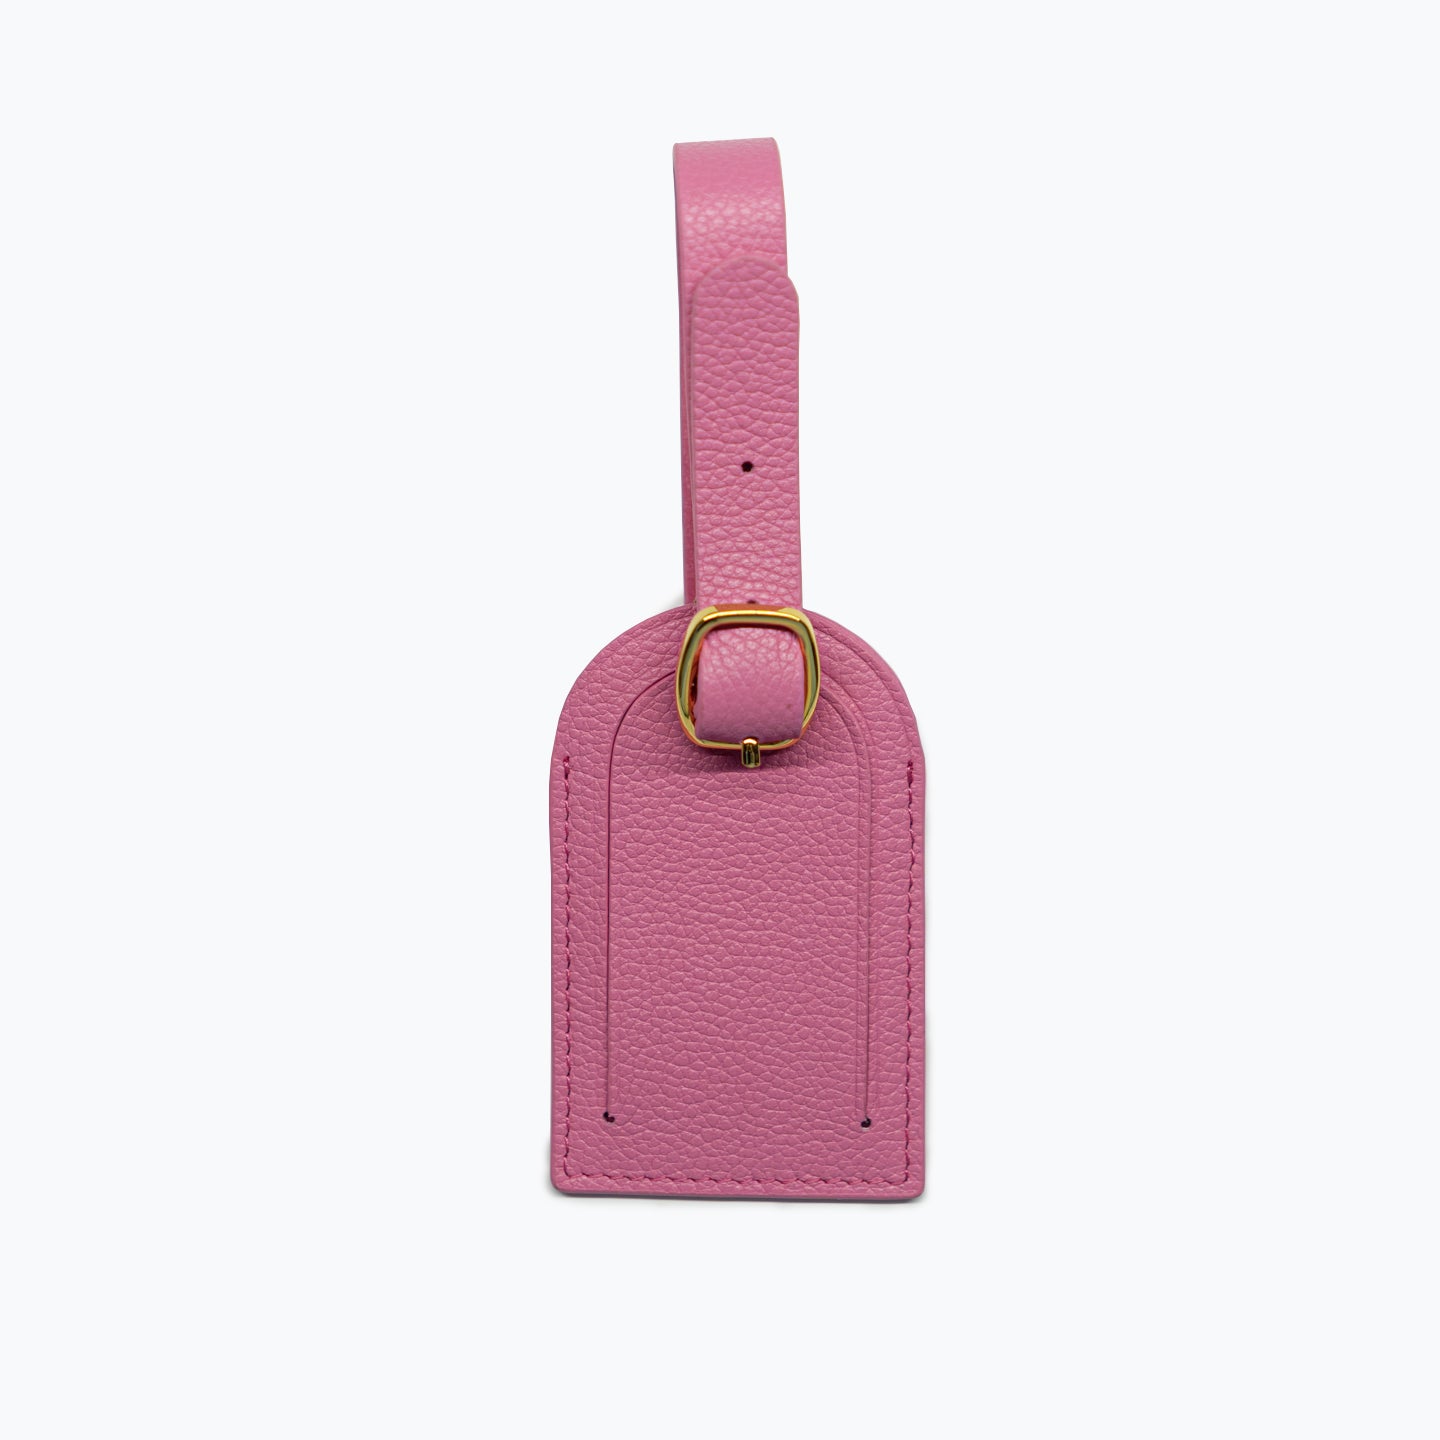 行李牌 - 粉色